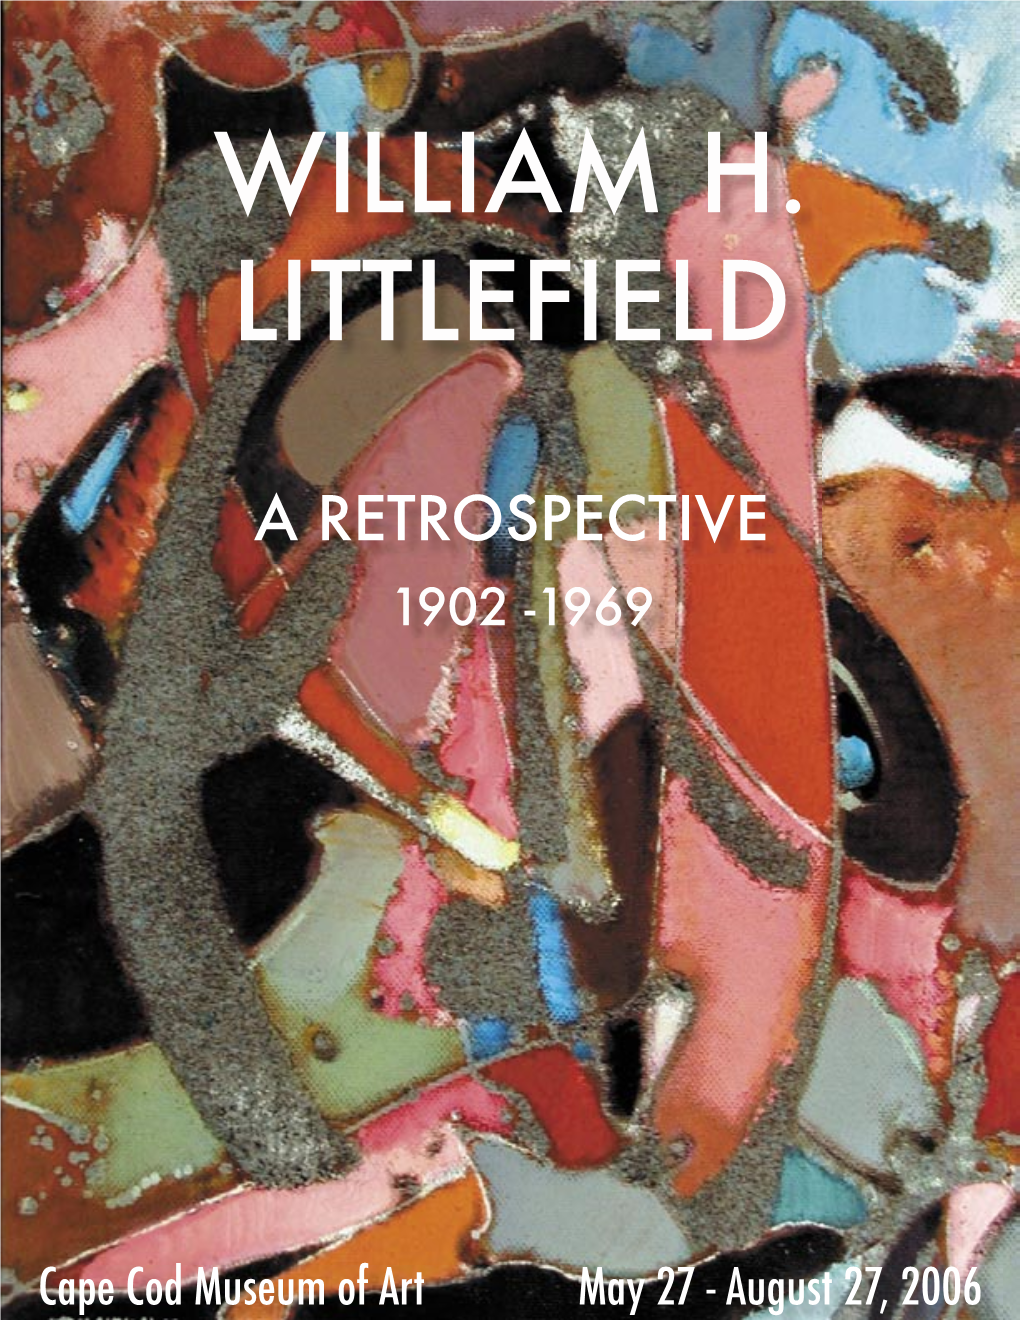 William H. Littlefield